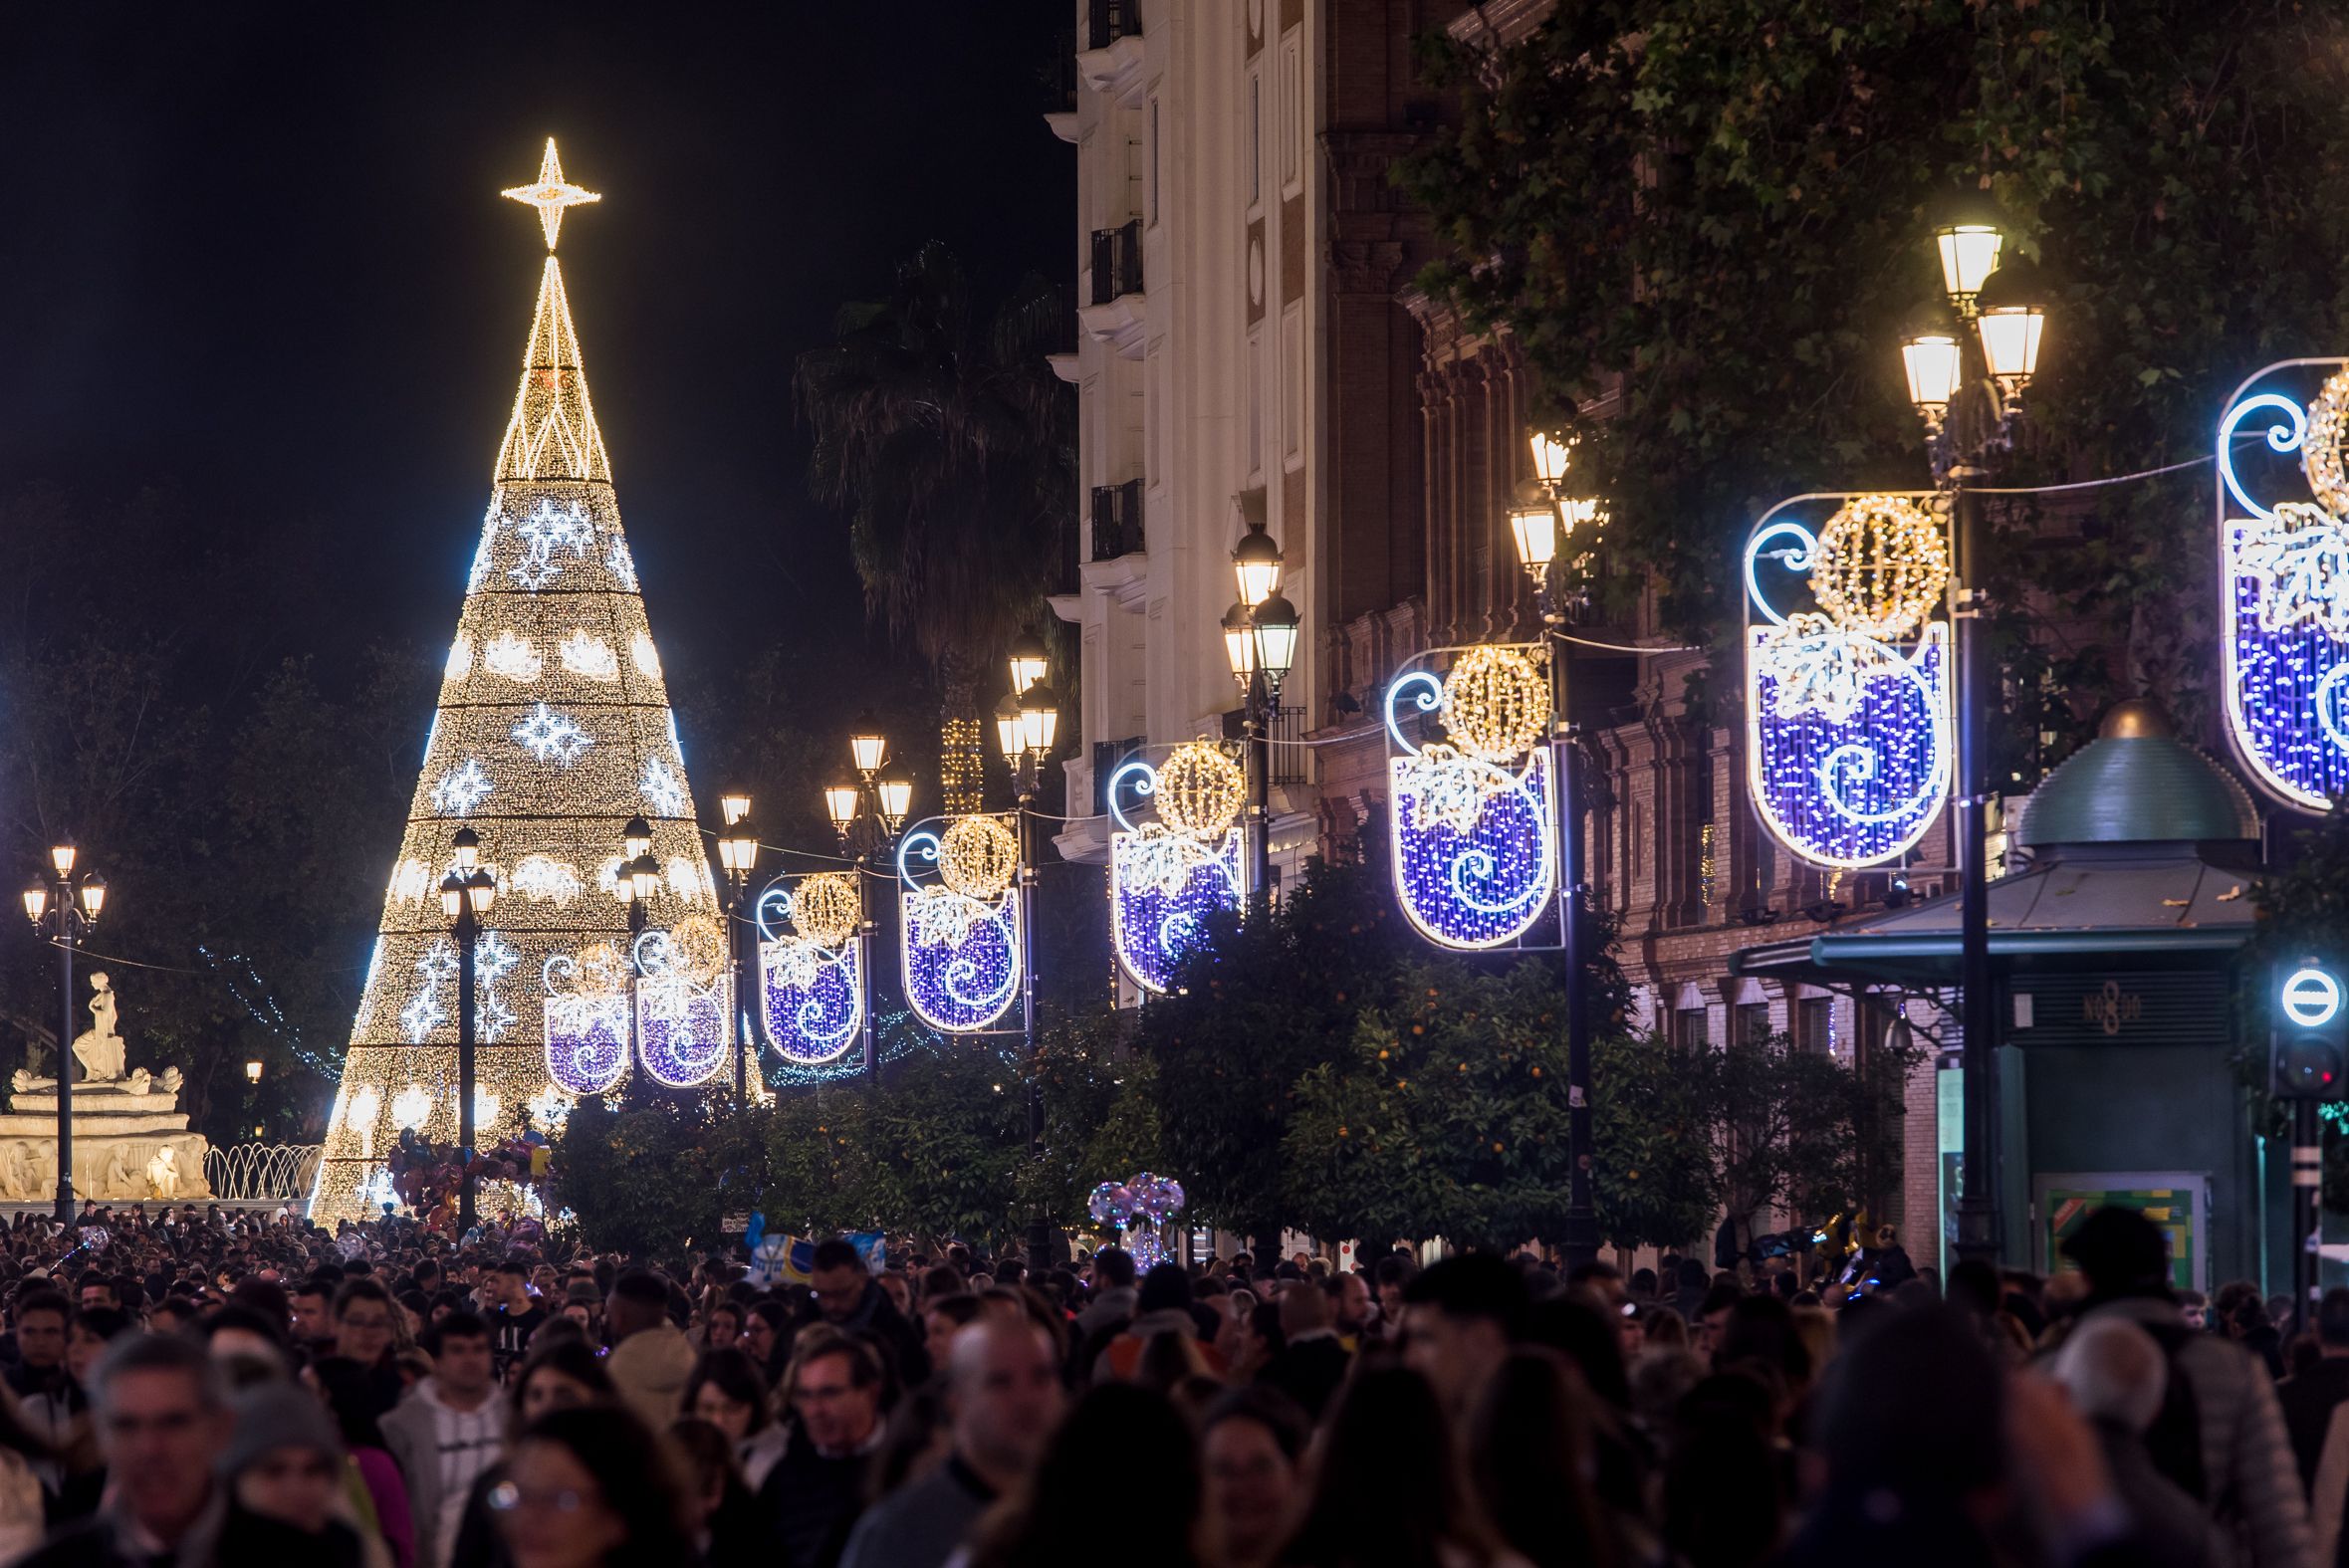 El día del encendido del alumbrado de Navidad en el centro de Sevilla.